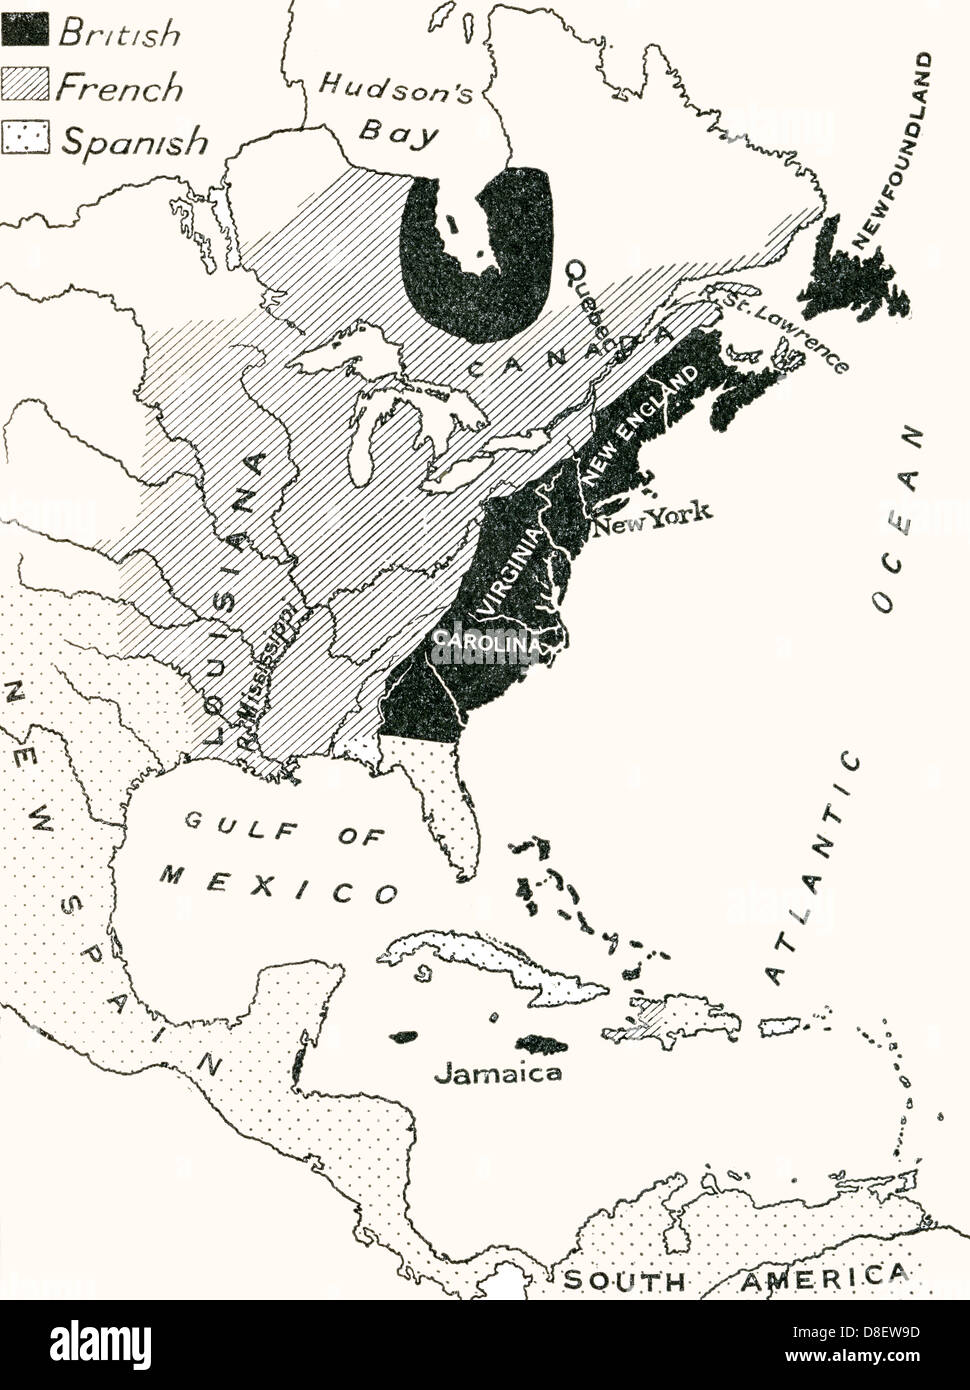 Mapa de América del Norte antes de la guerra de los siete años que tuvo lugar entre 1754 y 1763. Foto de stock